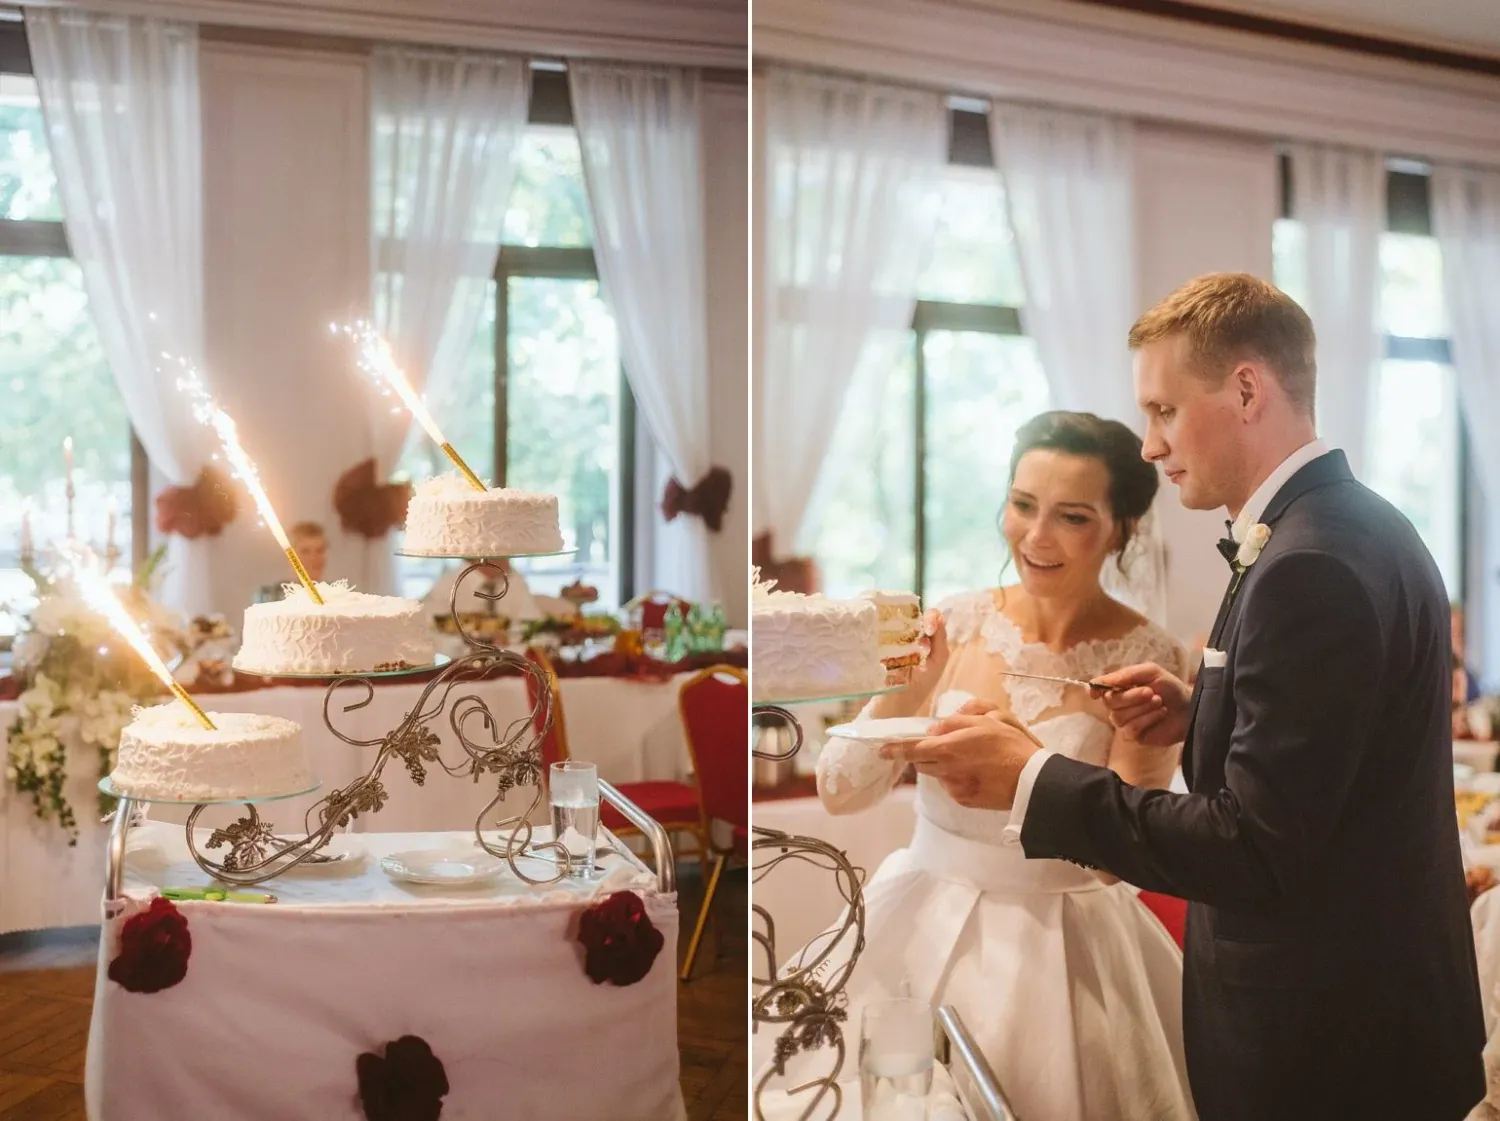 grazynajacek_wedding_16.webp - Grażyna & Jacek- Monika Chmielewska - wedding, portaits, family photography - Munich